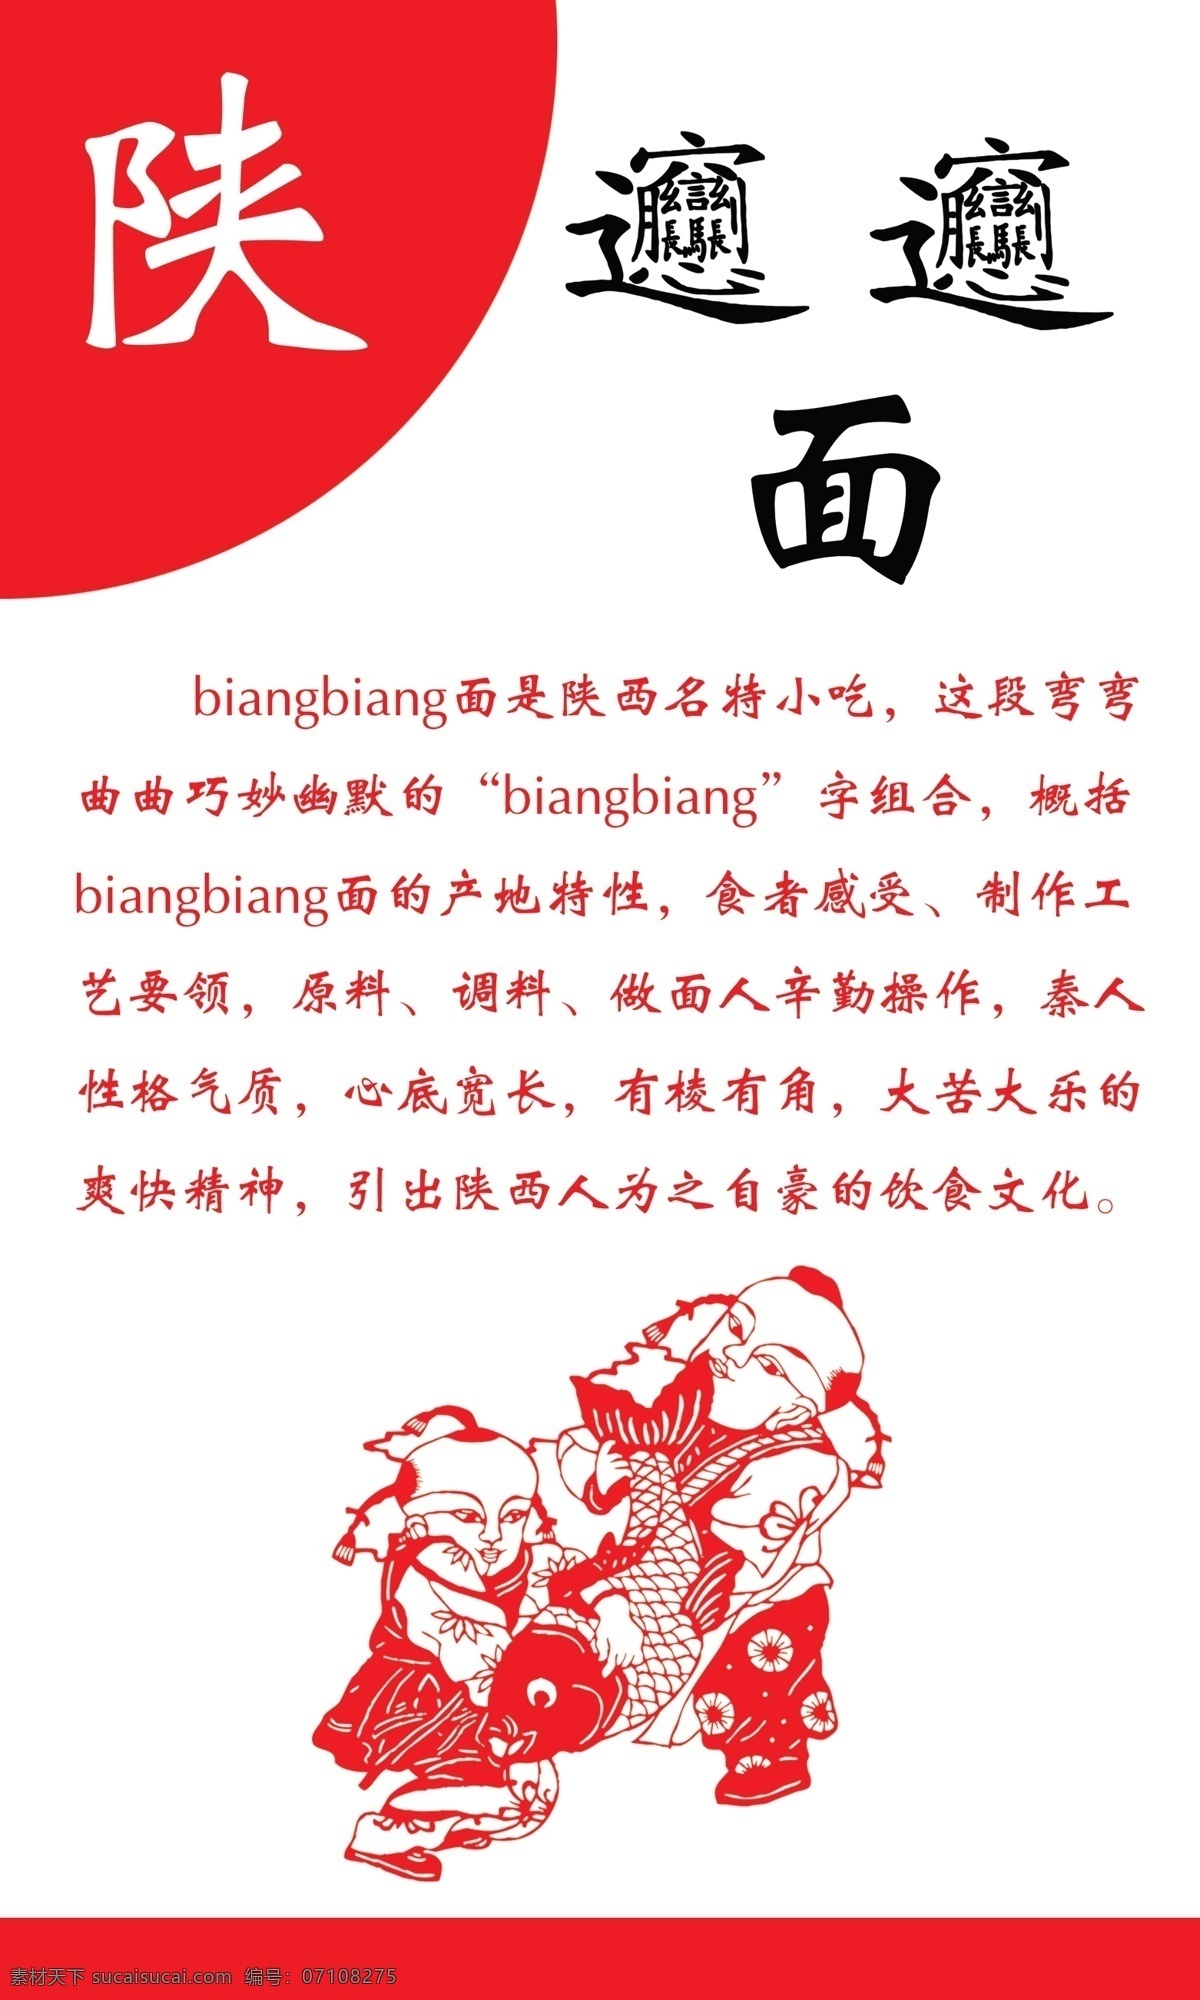 陕西特色 biangbiang 饮食文化 饮食理念 福娃 年画 广告设计模板 源文件